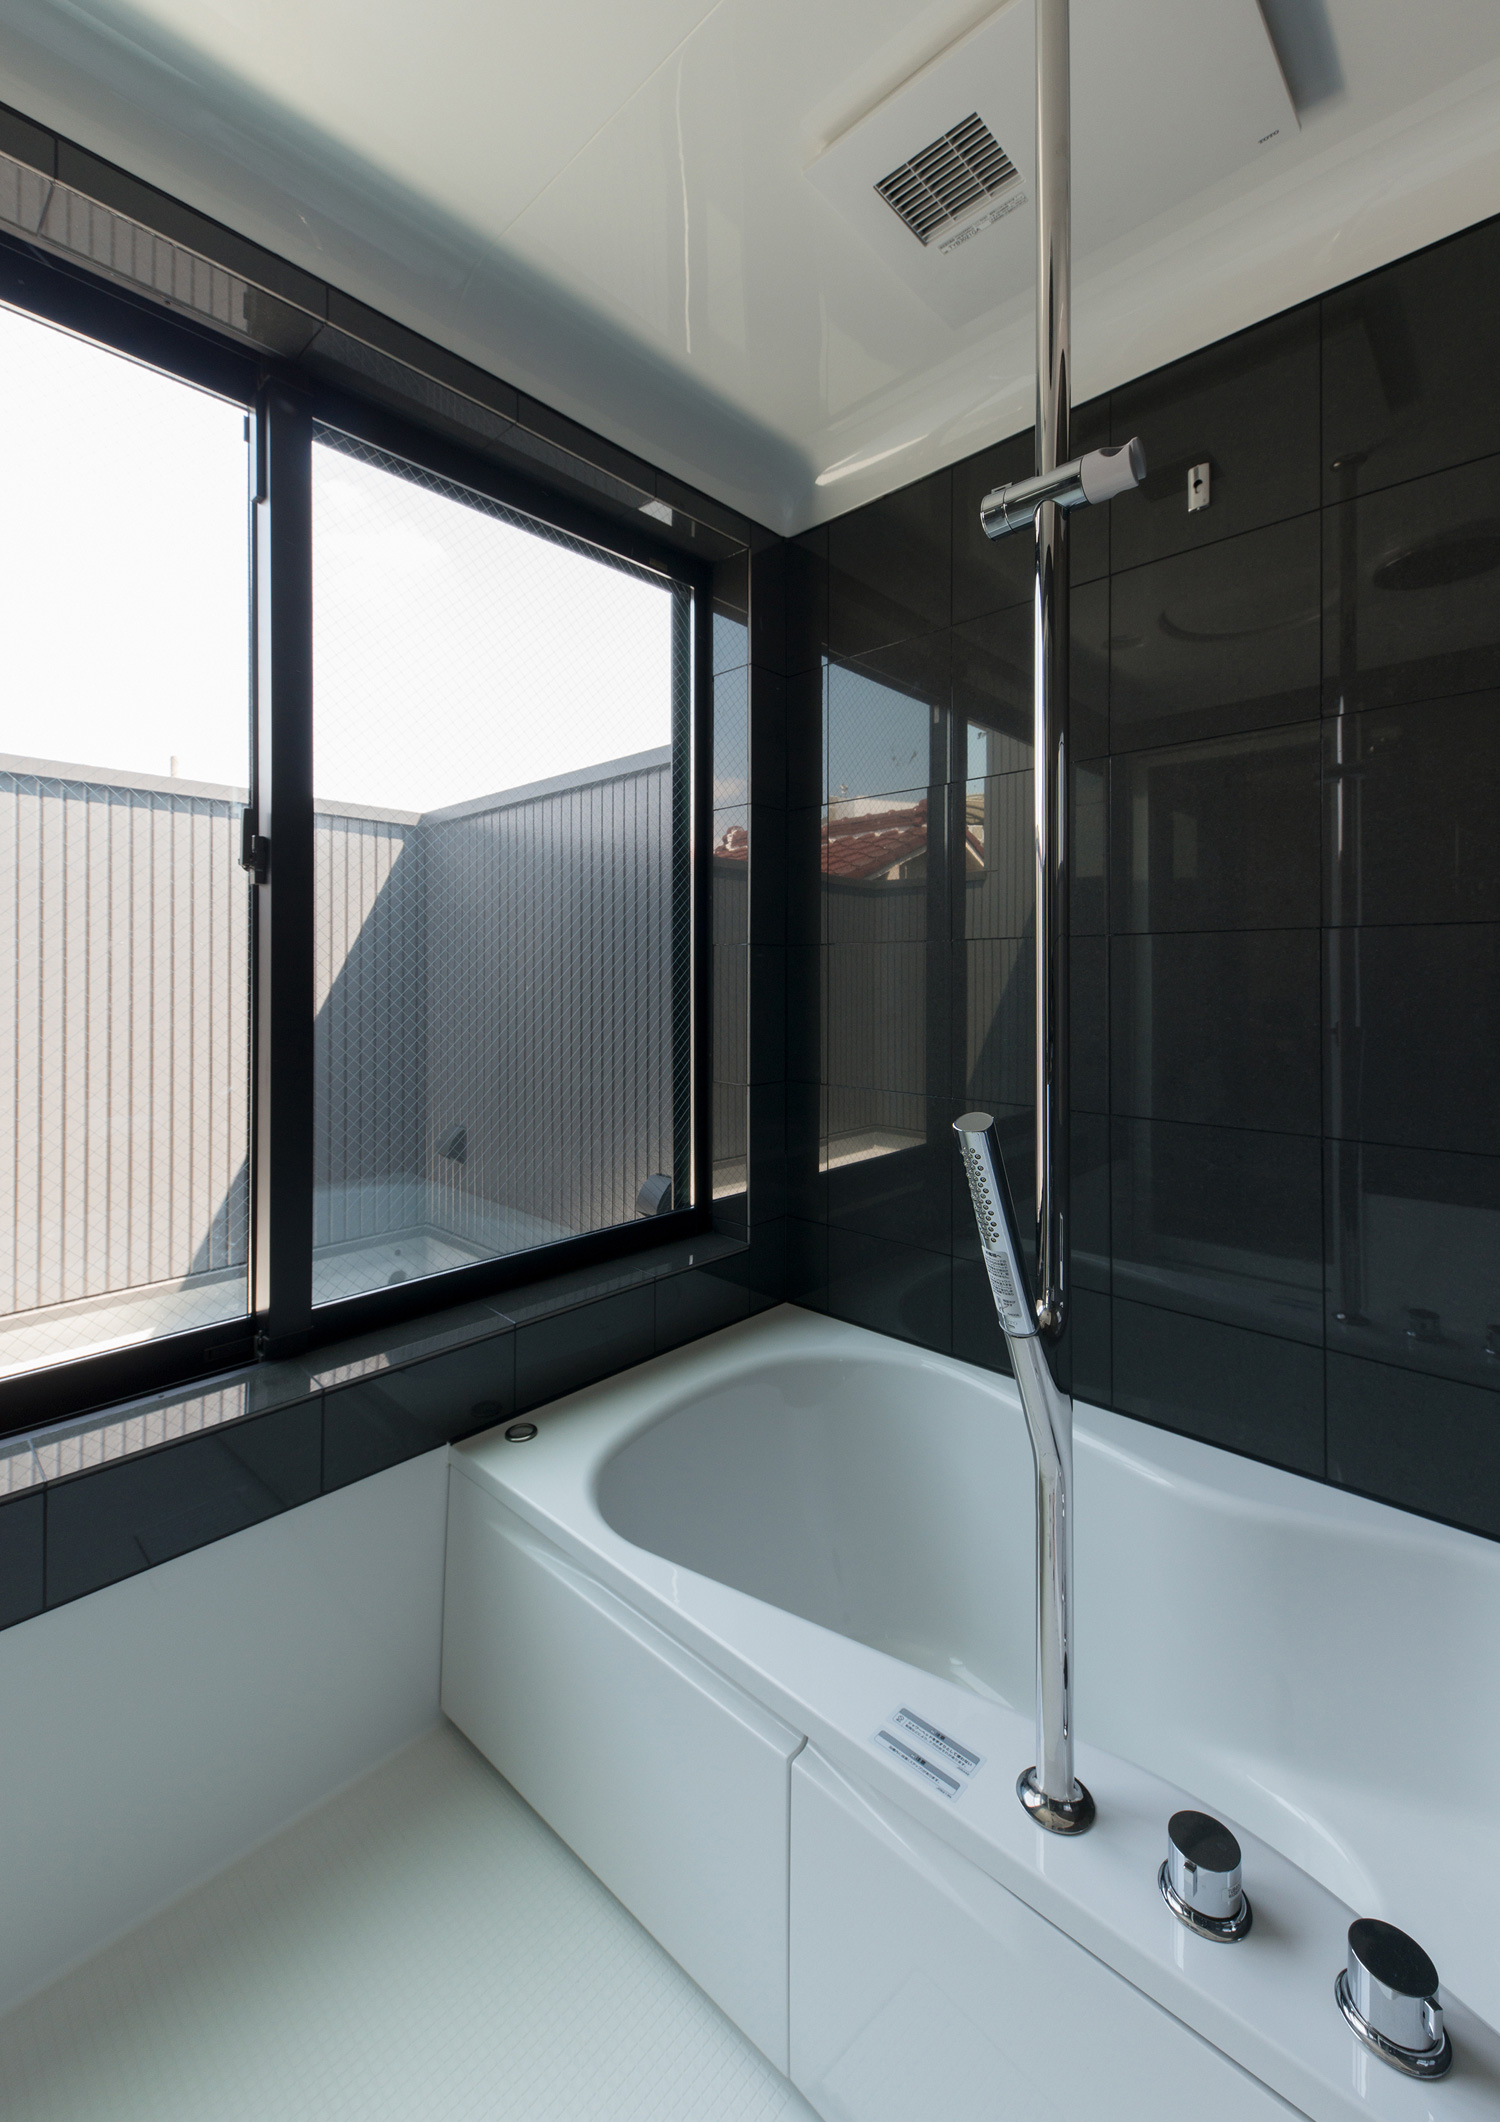 黒い壁でバルコニーに面した窓がある浴室・デザイン住宅